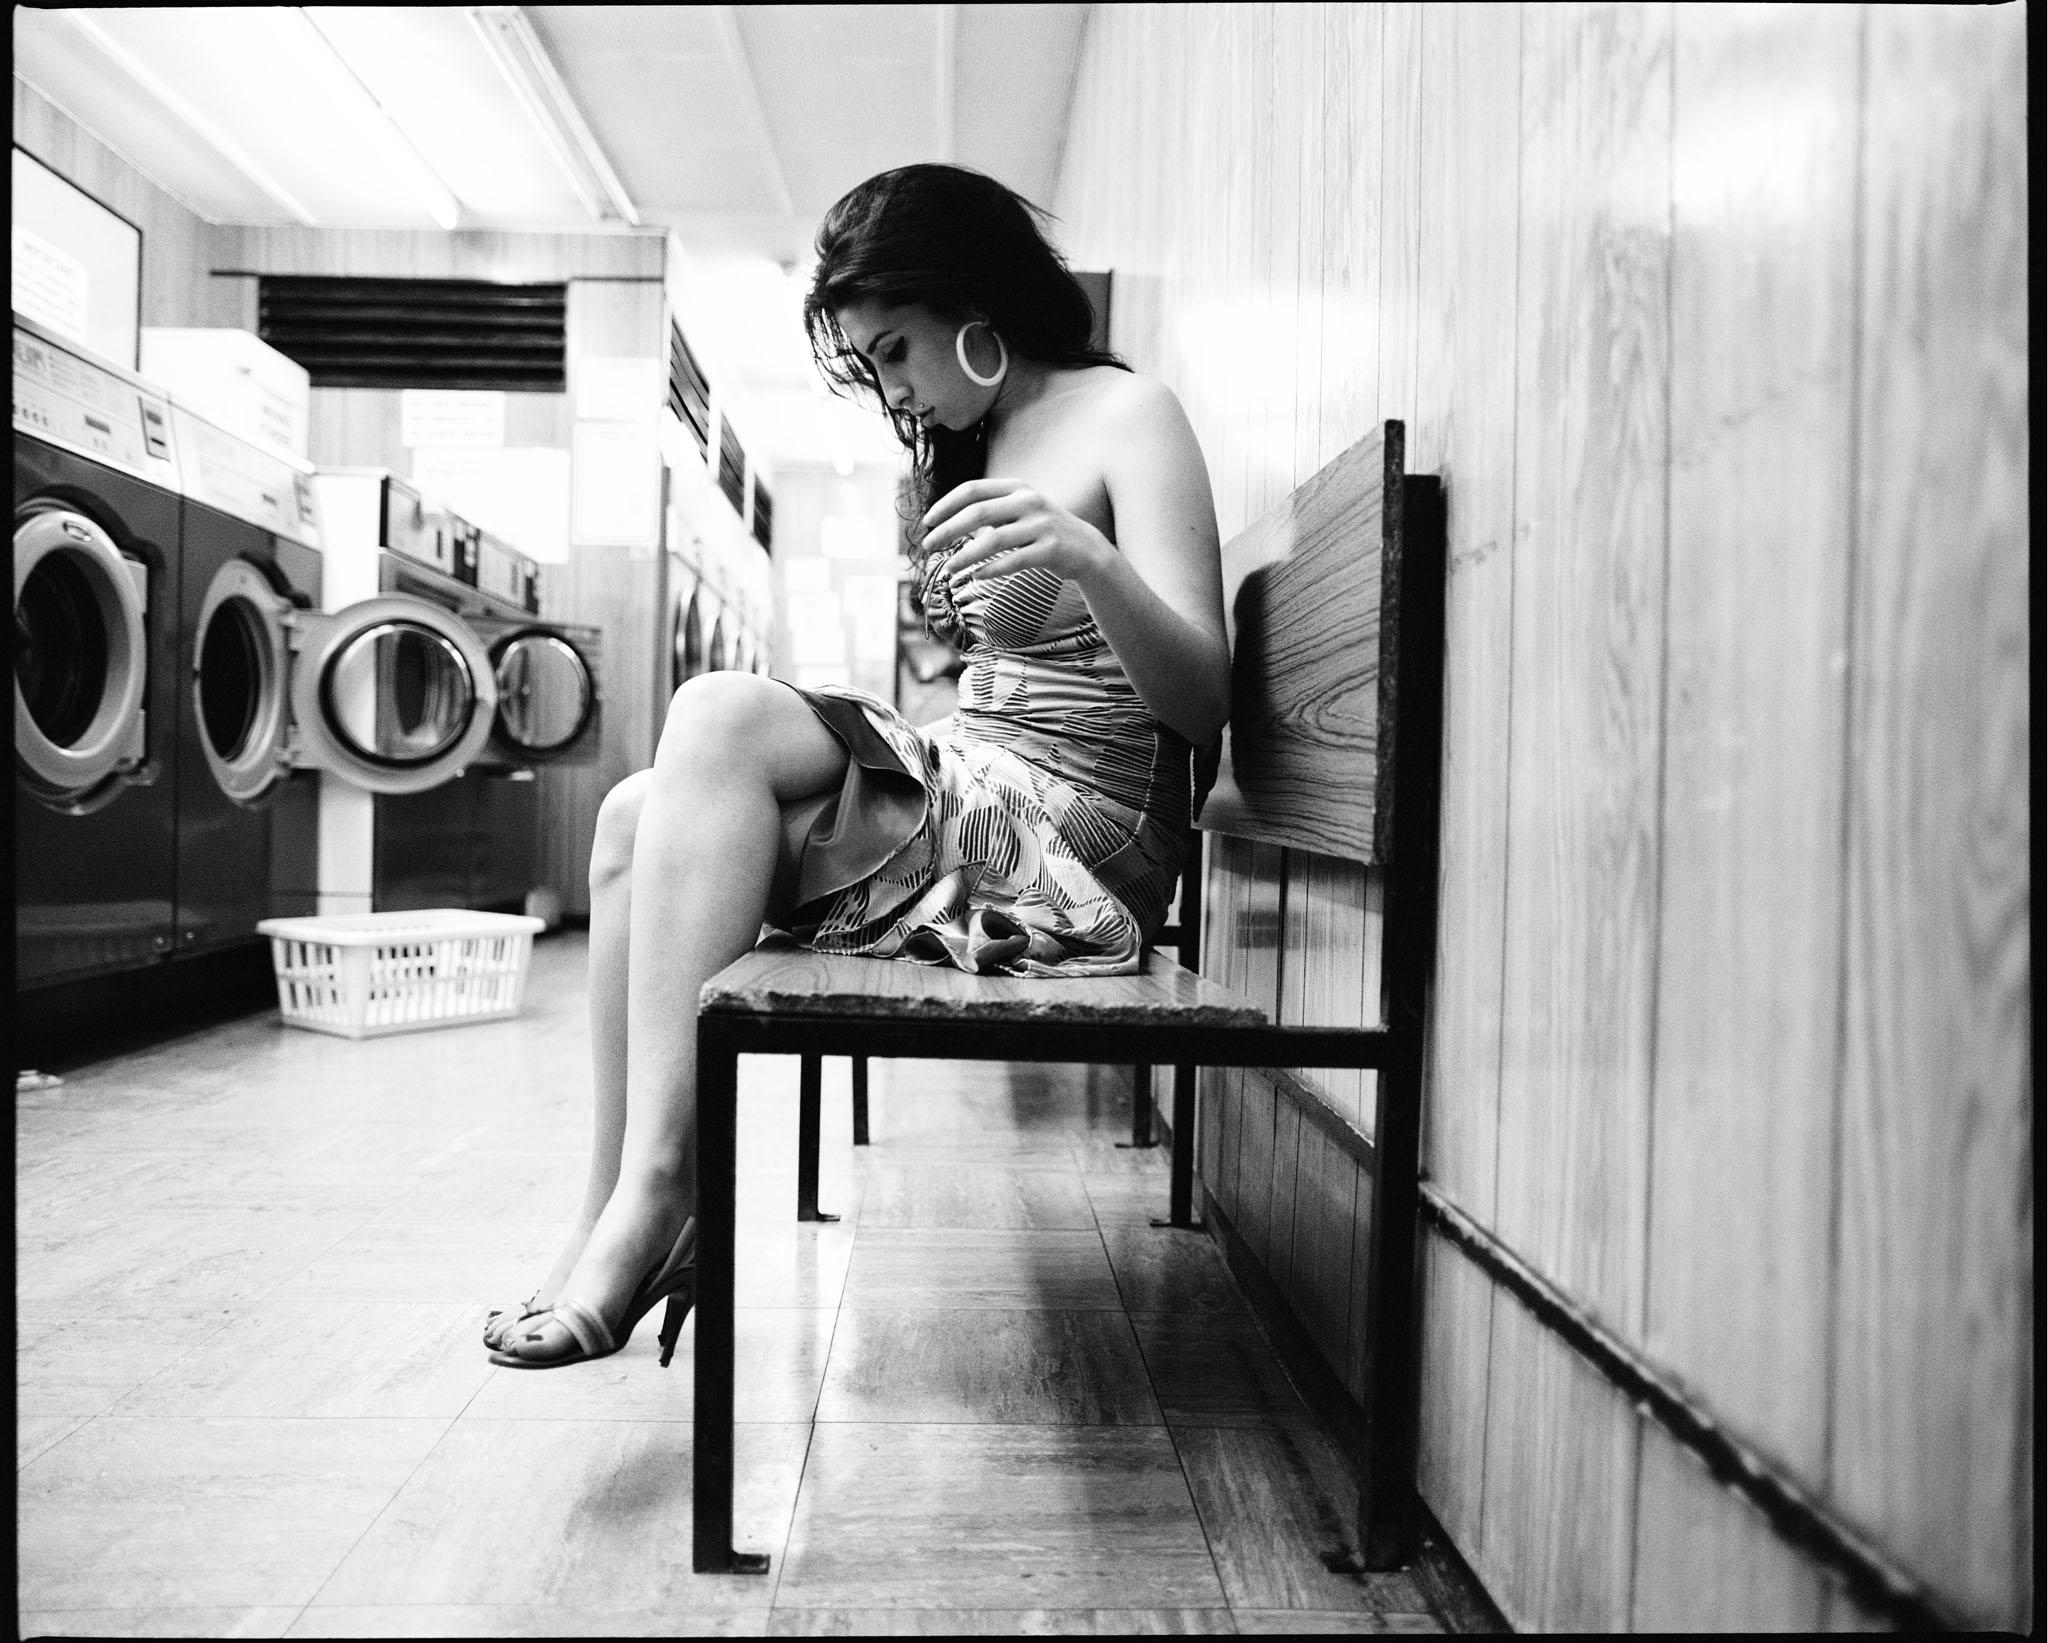 Tirage 9x12" encadré et signé d'Amy Winehouse pris dans une laverie automatique à Londres par Jake Chessum.

Le cadre mesure 16,5 x 14/5 x 1".

Encadré dans un simple cadre noir, avec passe-partout et verre transparent de conservation protégé contre